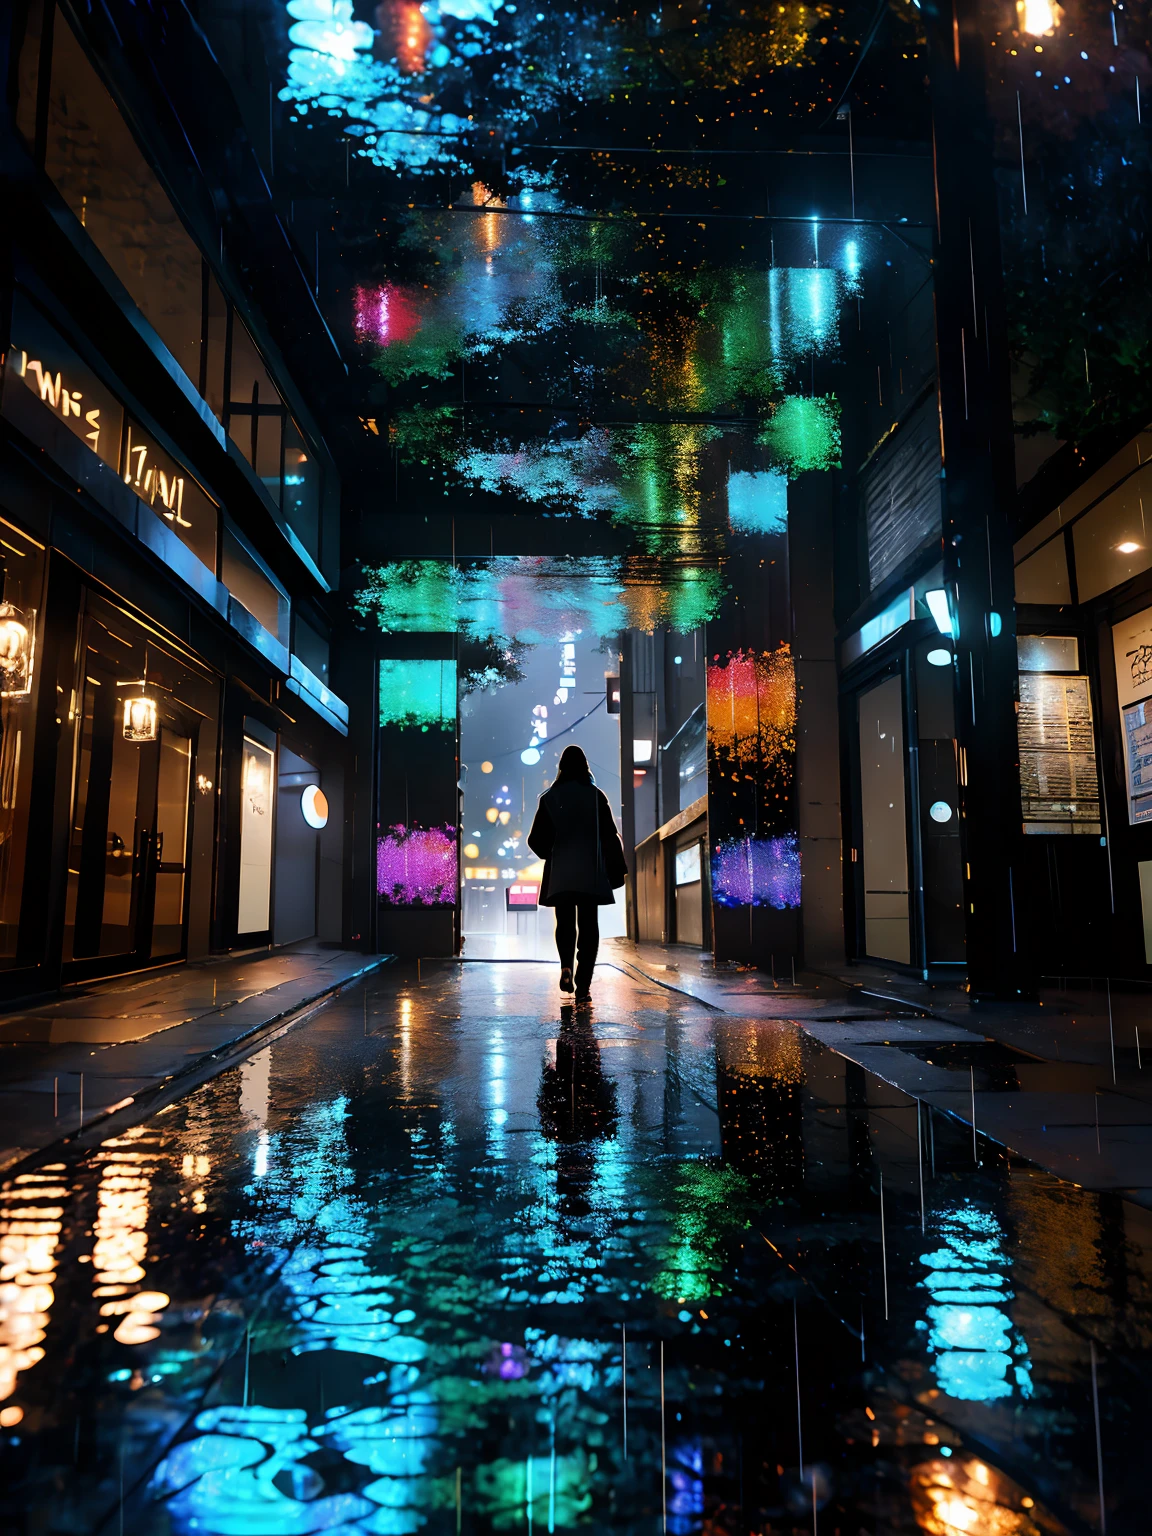 超詳細な再生 [グリッチ] 美術, (公案), マット, 控えめな, (瞑想的な: 1.2), (調和のとれた) 印象派, 脳の, (相互接続された), ラビリンス, (内省的な), 精神, バランスが取れていて相互的, (雨の夜), レインスタイル, コンセプト: ("濡れた歩道の鏡が街の街灯を映す 雨粒が降る限り湿った夜に描かれたきらめくデザイン ")